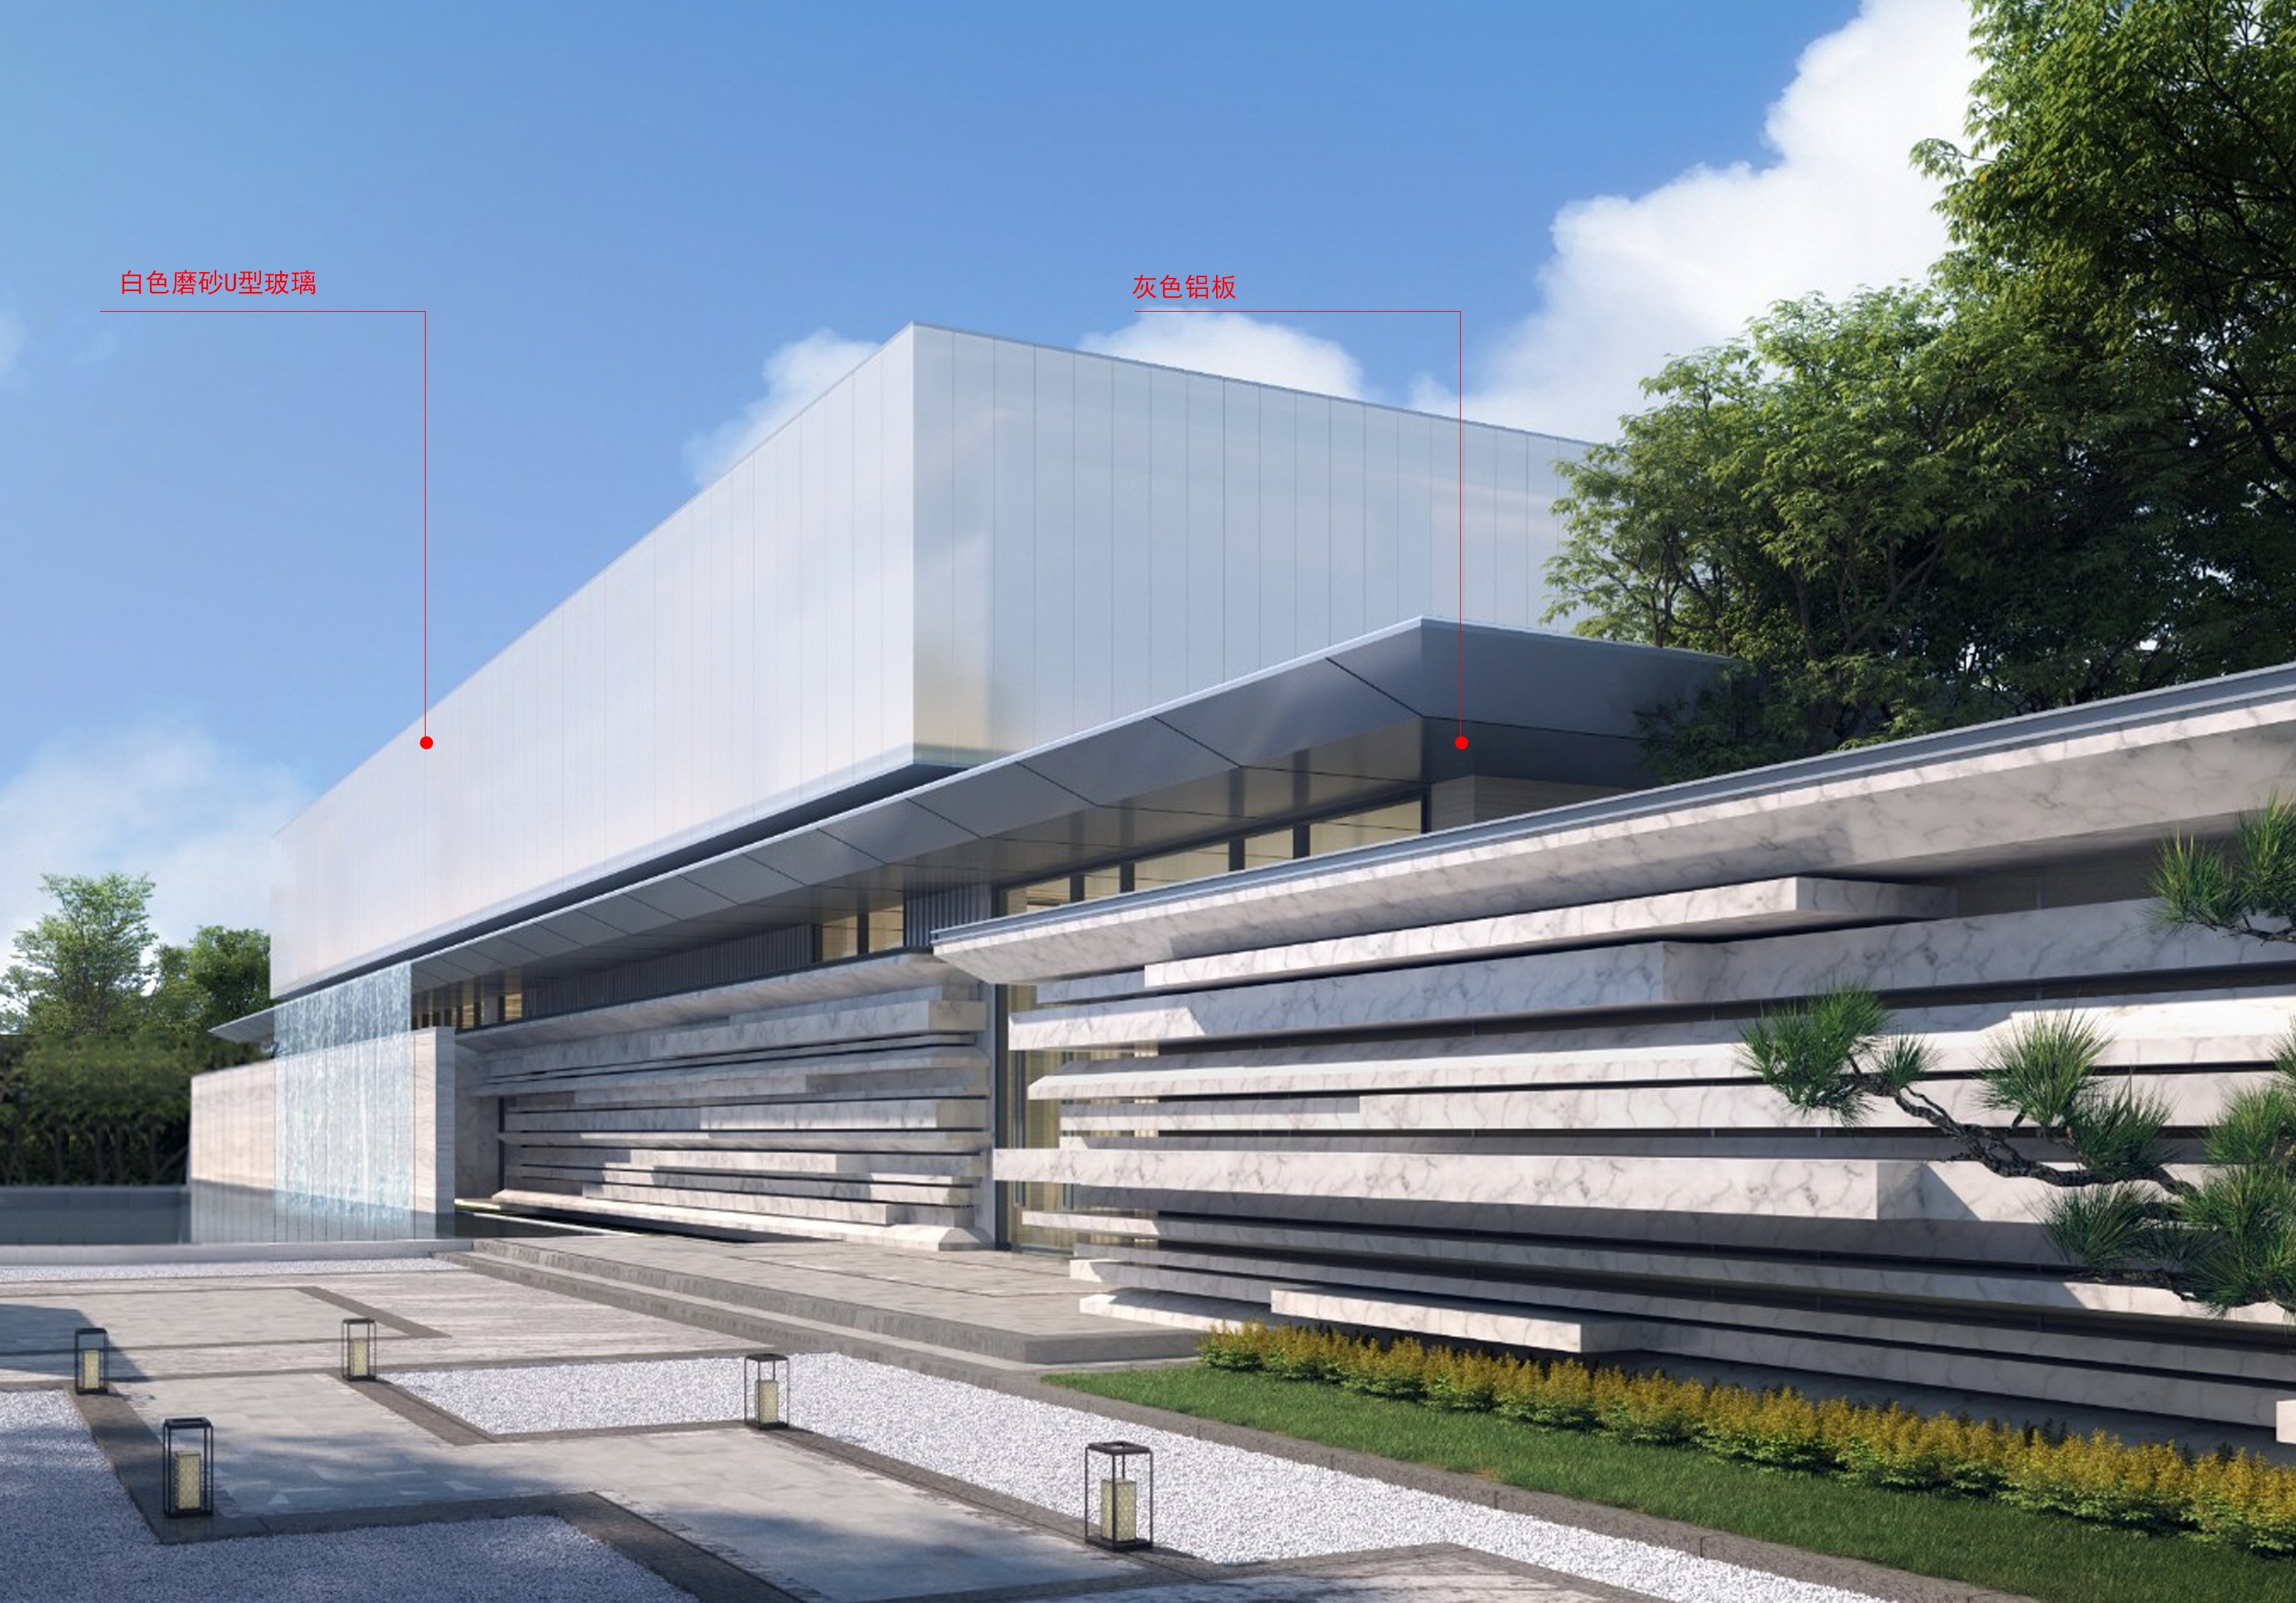 WJ-J-2021-029地块项目（吴江中建之星）售楼处 沿街透视图